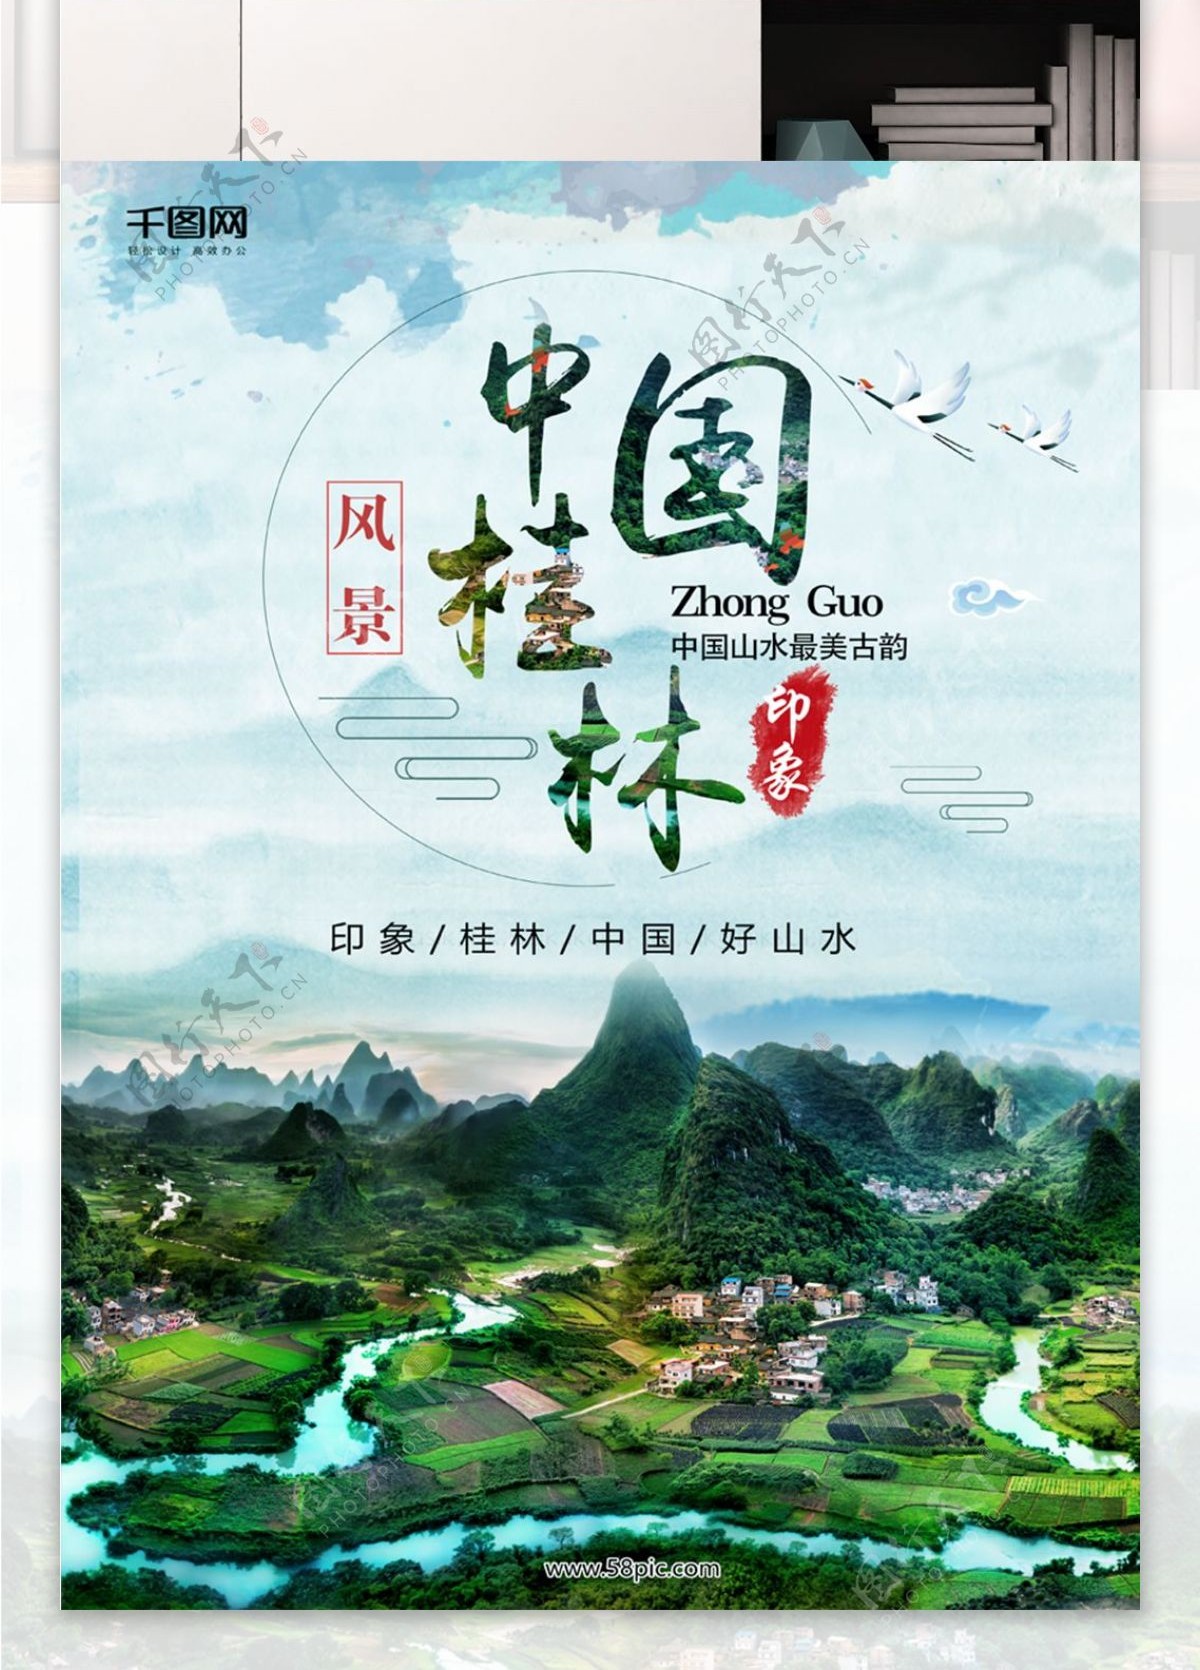 中国桂林山水旅游海报